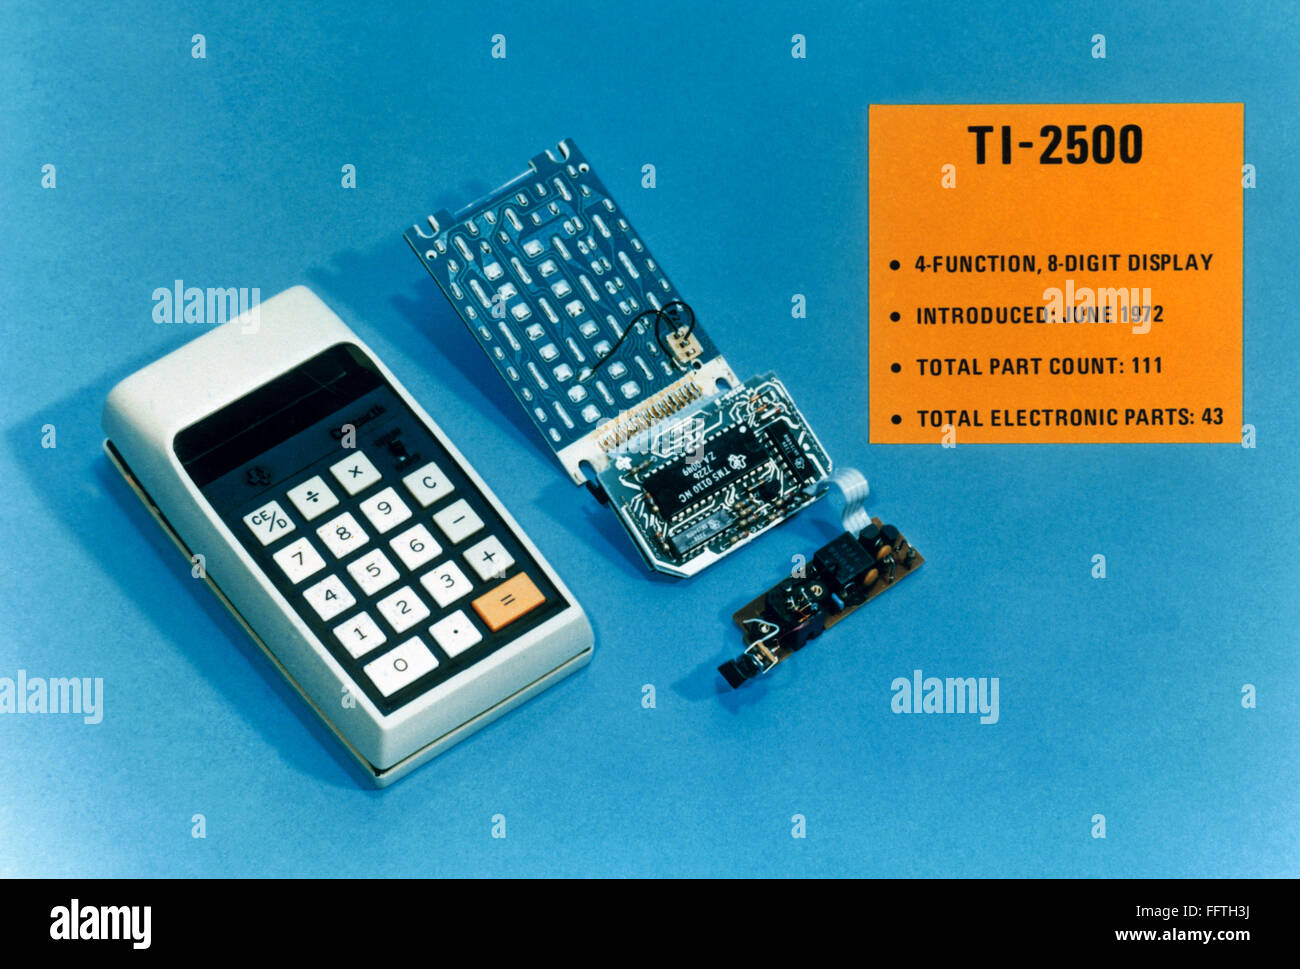 Calcolatrice, 1972. /Nl Texas Instruments Ti-2500 calcolatrice, introdotto nel 1972. Foto Stock